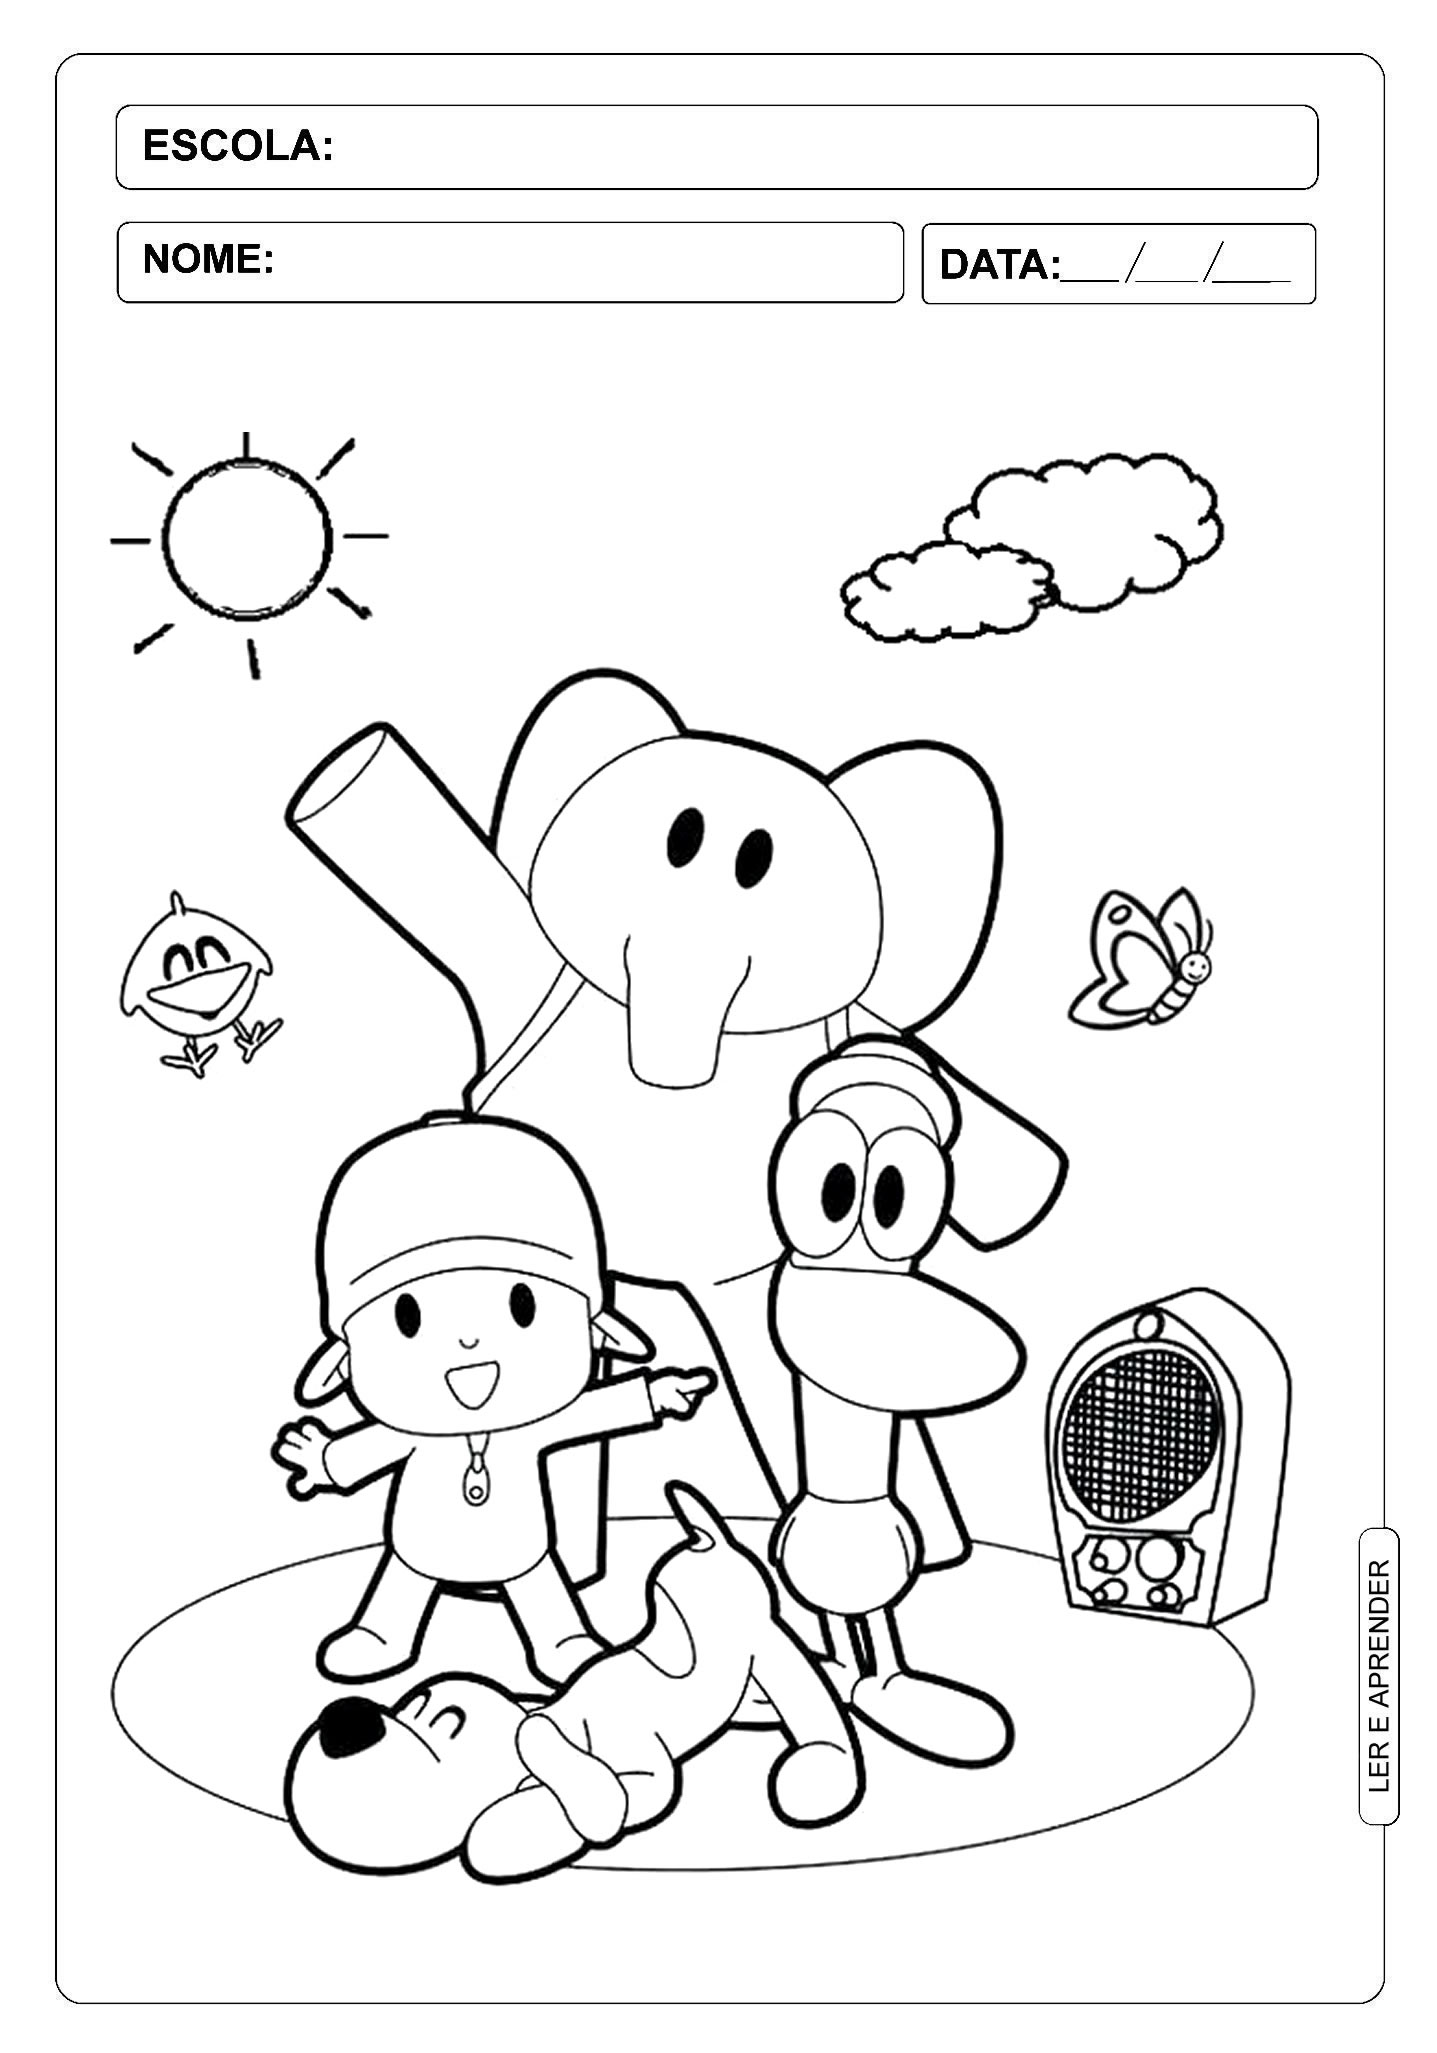 Vamos desenhar e colorir o Pocoyo e seus amigos num piquenique